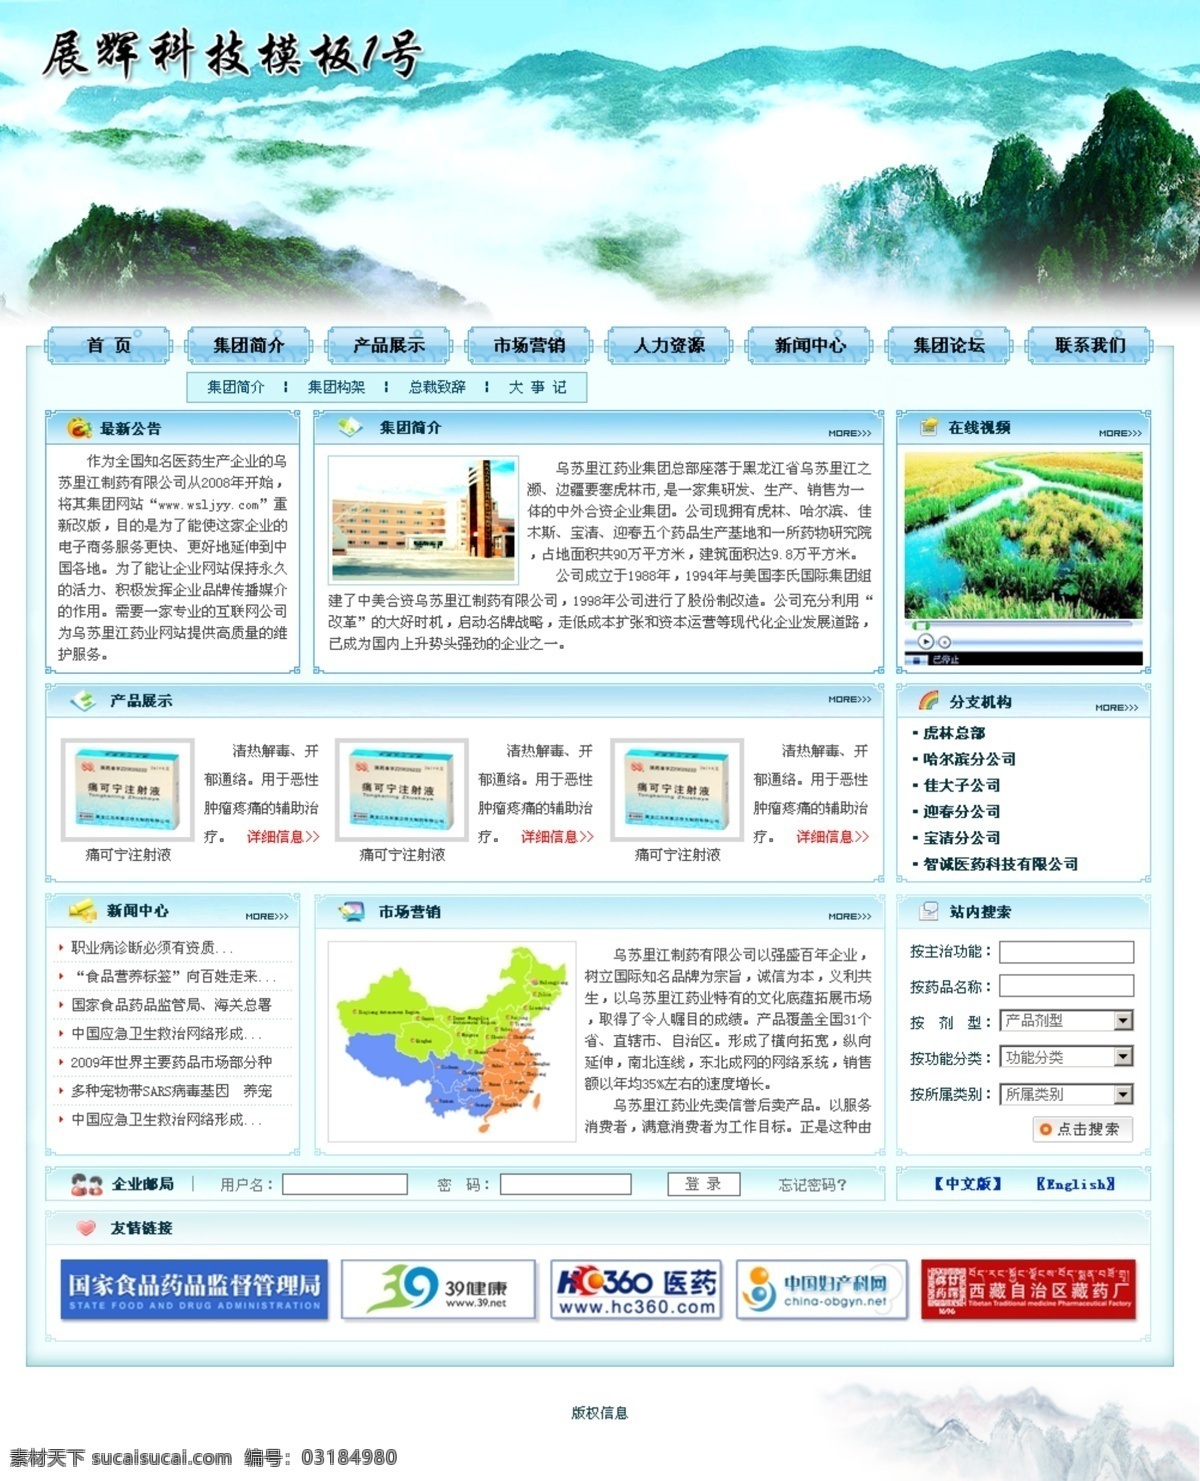 山水 风格 医药企业 网页模板 山水风格 中国风格 蓝色色调 网页素材